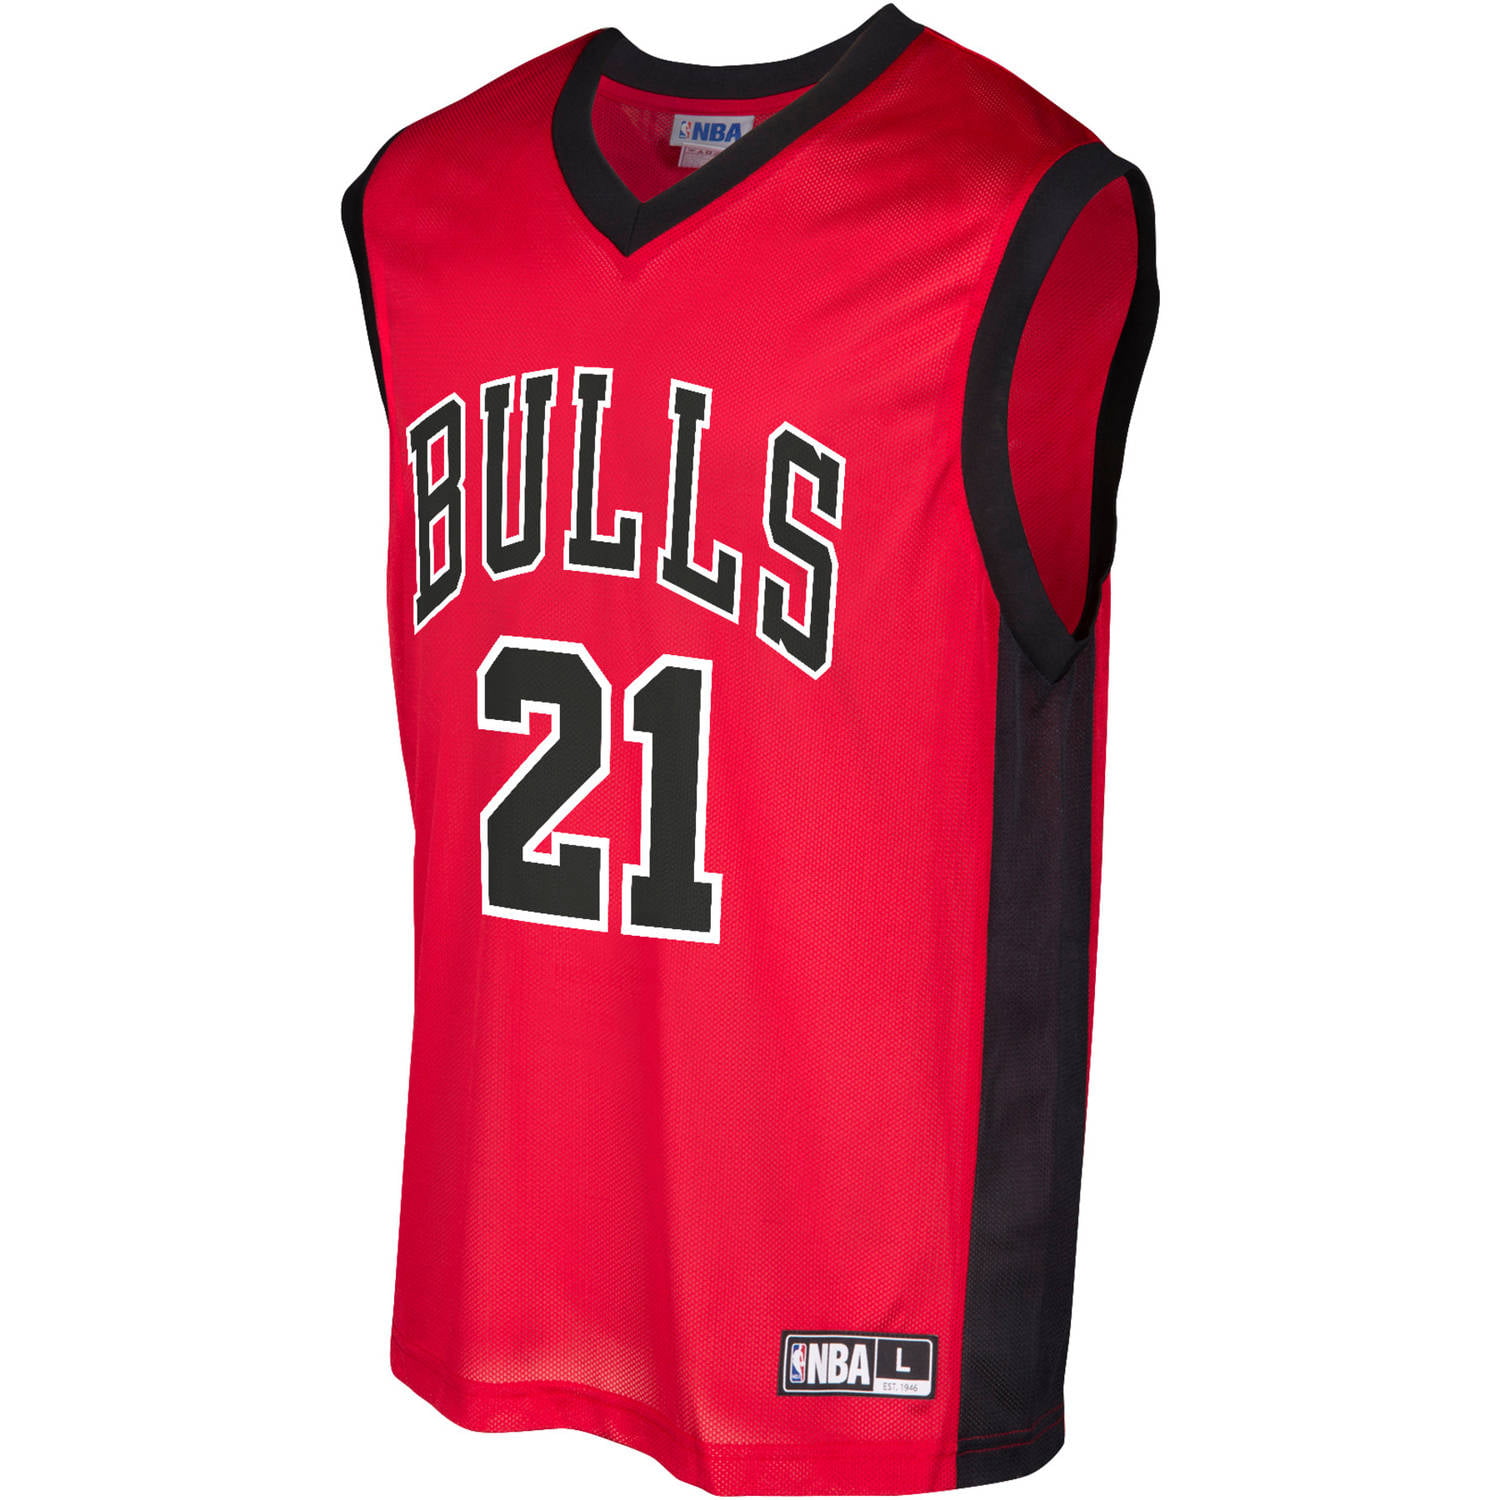 î€€NBAî€ Chicago Bulls Men\'s Butler Team Replica î€€Jerseyî€ - Walmart.com ...